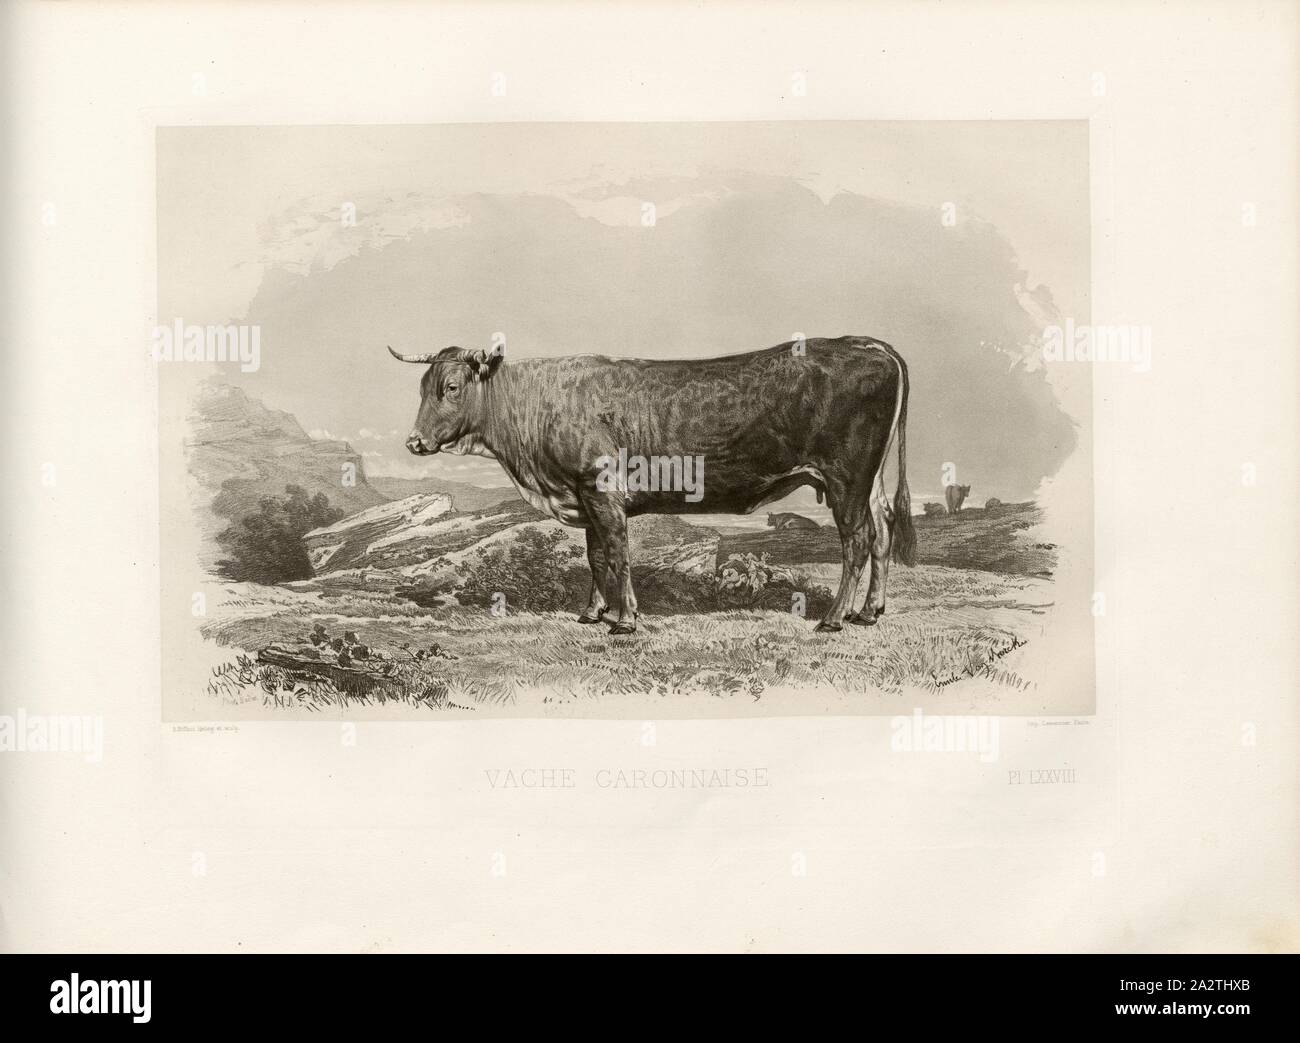 Cow Caronnaise, French cattle breed, cow, signed: Phot., Nadar, Emile Van Marcke; A. Riffaut Heliog., et sculp, Pl. LXXVIII, S. 175, Tournachon, Adrien Alban (Phot.); Marcke, Emile van; Riffaut, A. (heliog. et sc.), Emile Baudement: Les races bovines au concours universel agricole de Paris en 1856: études zootechniques. Bd. 2. Paris: Imprimerie Impériale, MDCCCLXI [1861 Stock Photo